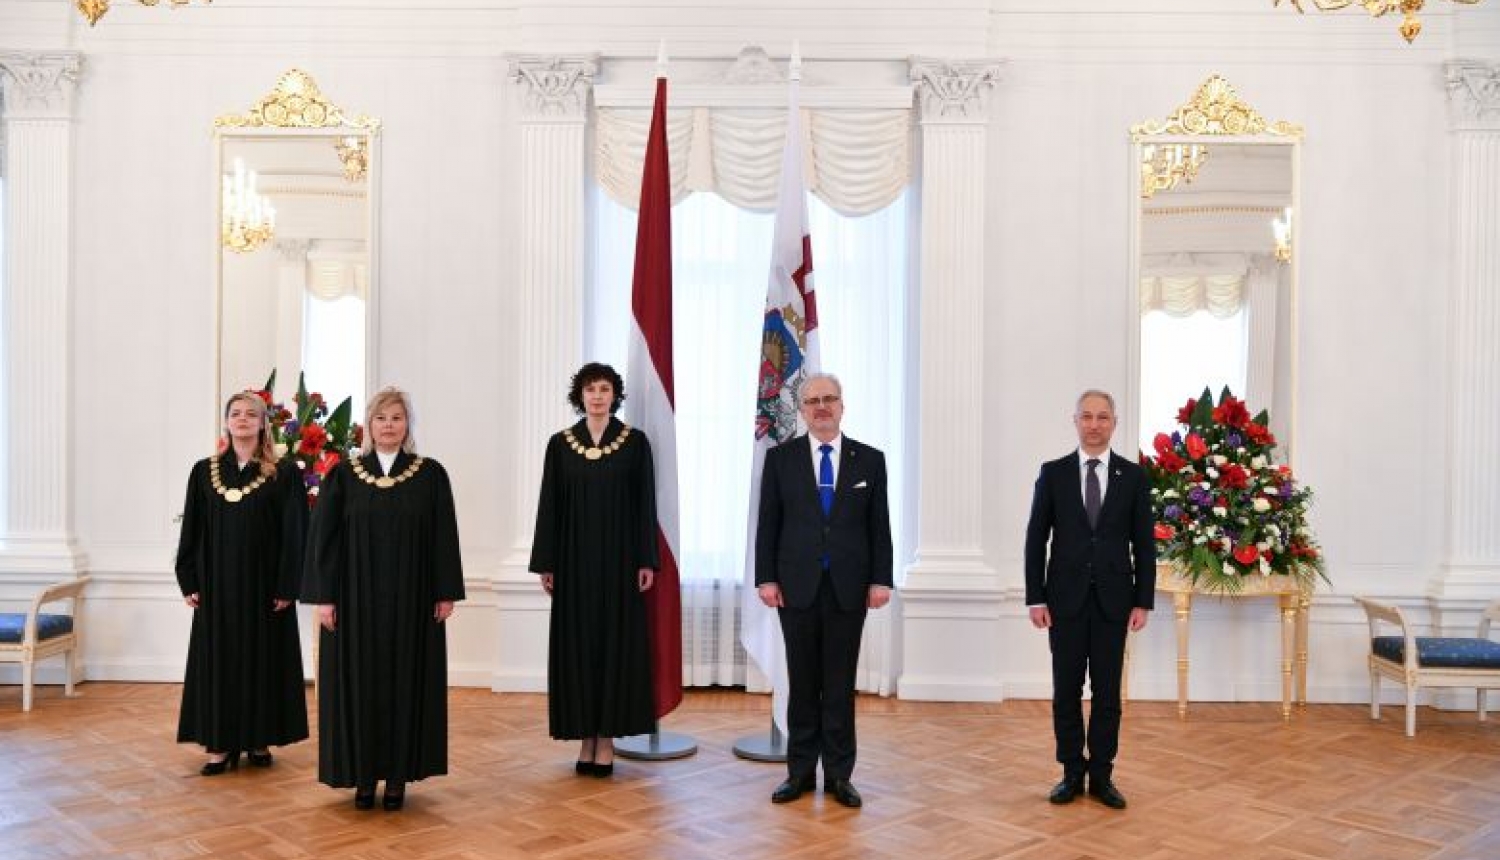 Rīgas pilī tiesneša zvērestu Valsts prezidentam dod tiesneses Līga Supe, Nataļja Saratova un Zane Aldiņa